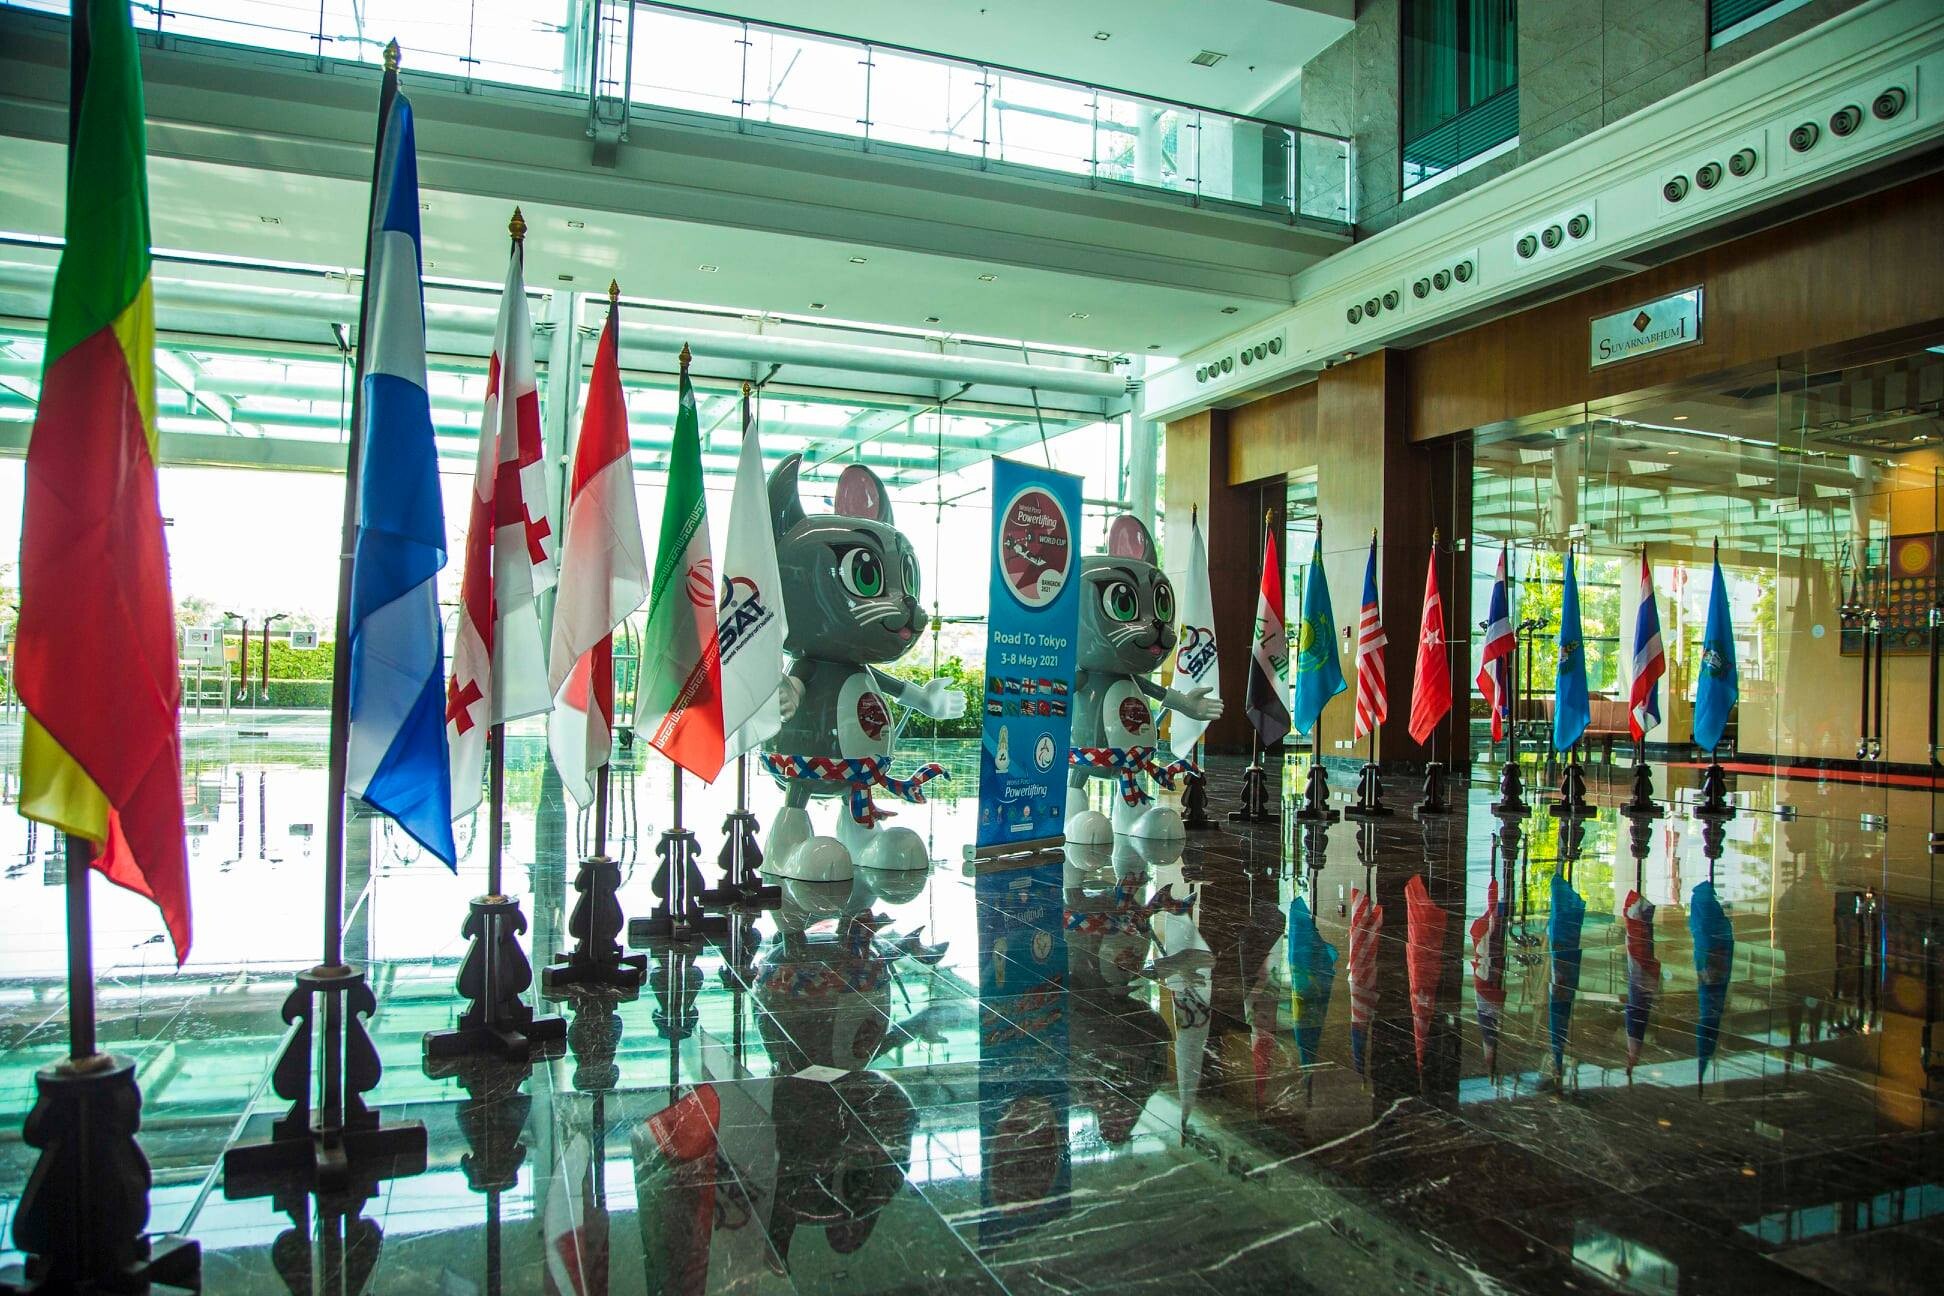 โรงแรมโนโวเทล สุวรรณภูมิ แอร์พอร์ต ร่วมเป็นส่วนหนึ่งในการแข่งขันกีฬายกน้ำหนักคนพิการนานาชาติ รายการ "Bangkok 2021 World Para Powerlifting World Cup"